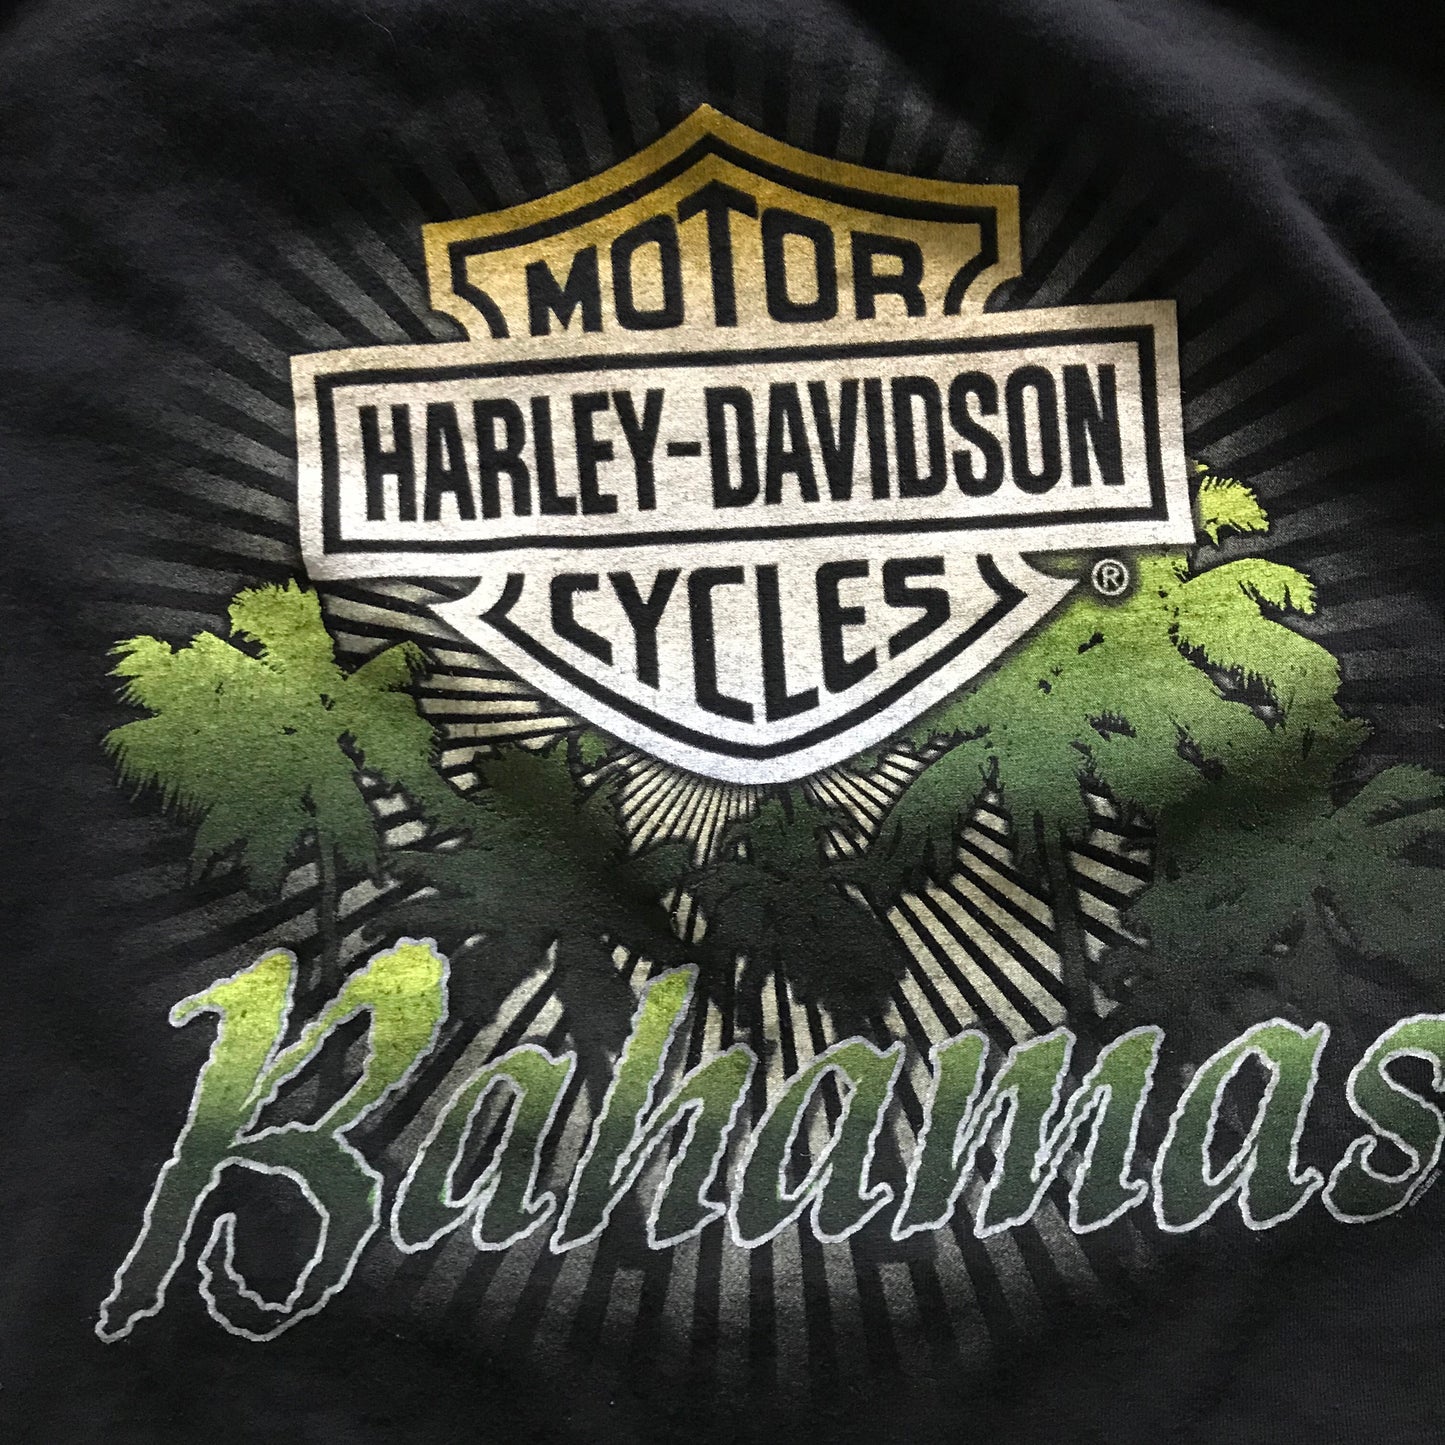 Harley Davidson Bahamas T-shirt